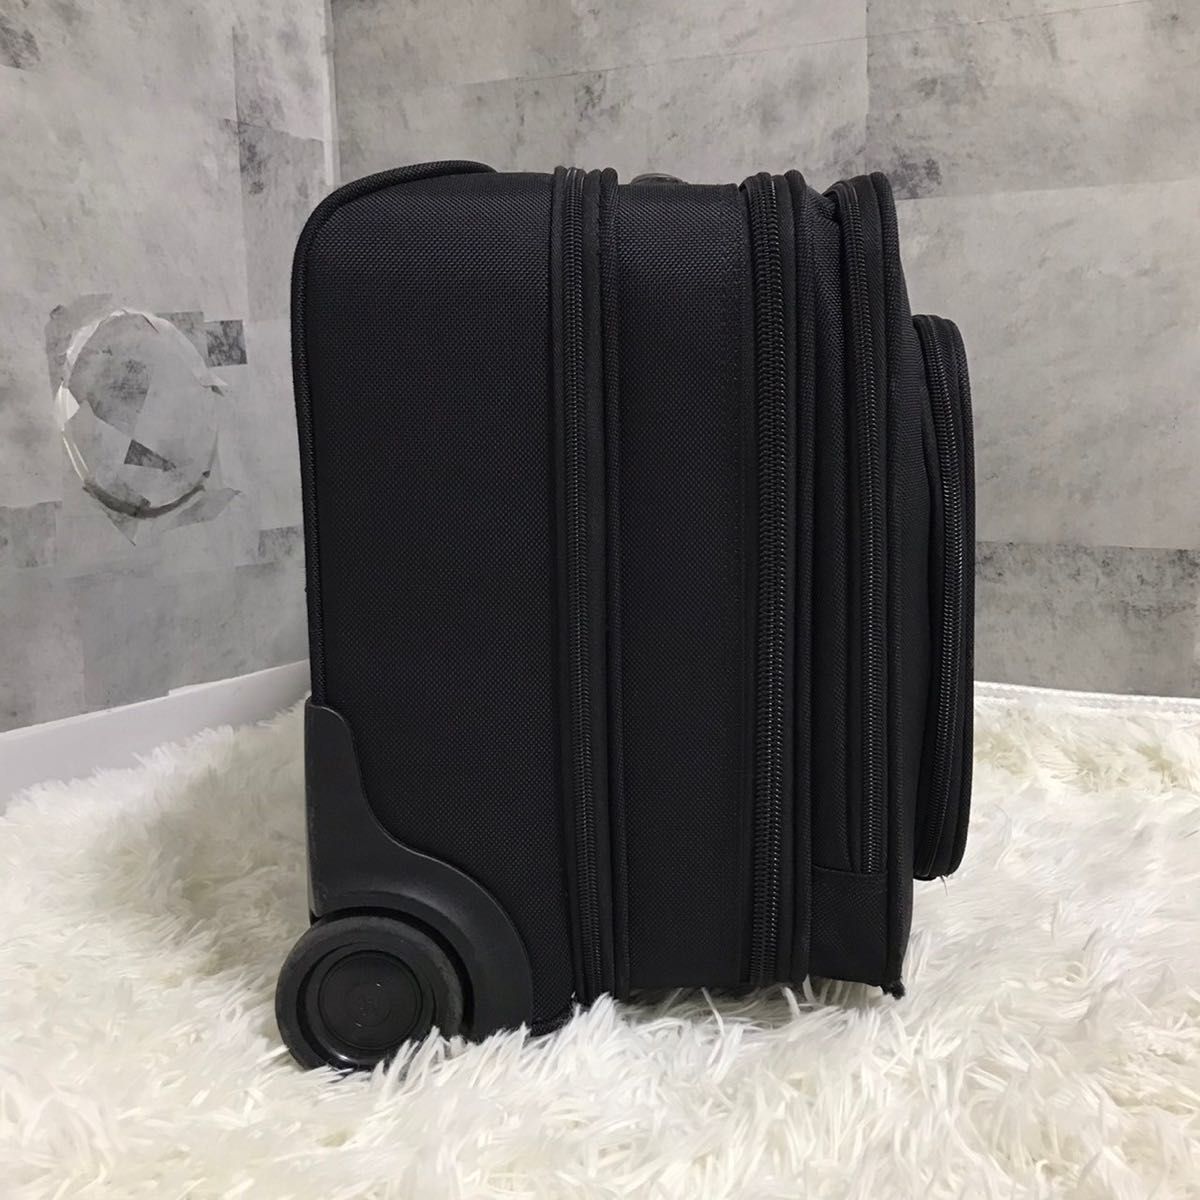 美品 Samsonite キャリーケース モバイルオフィス 機内持ち込み可 2輪 サムソナイト スーツケース